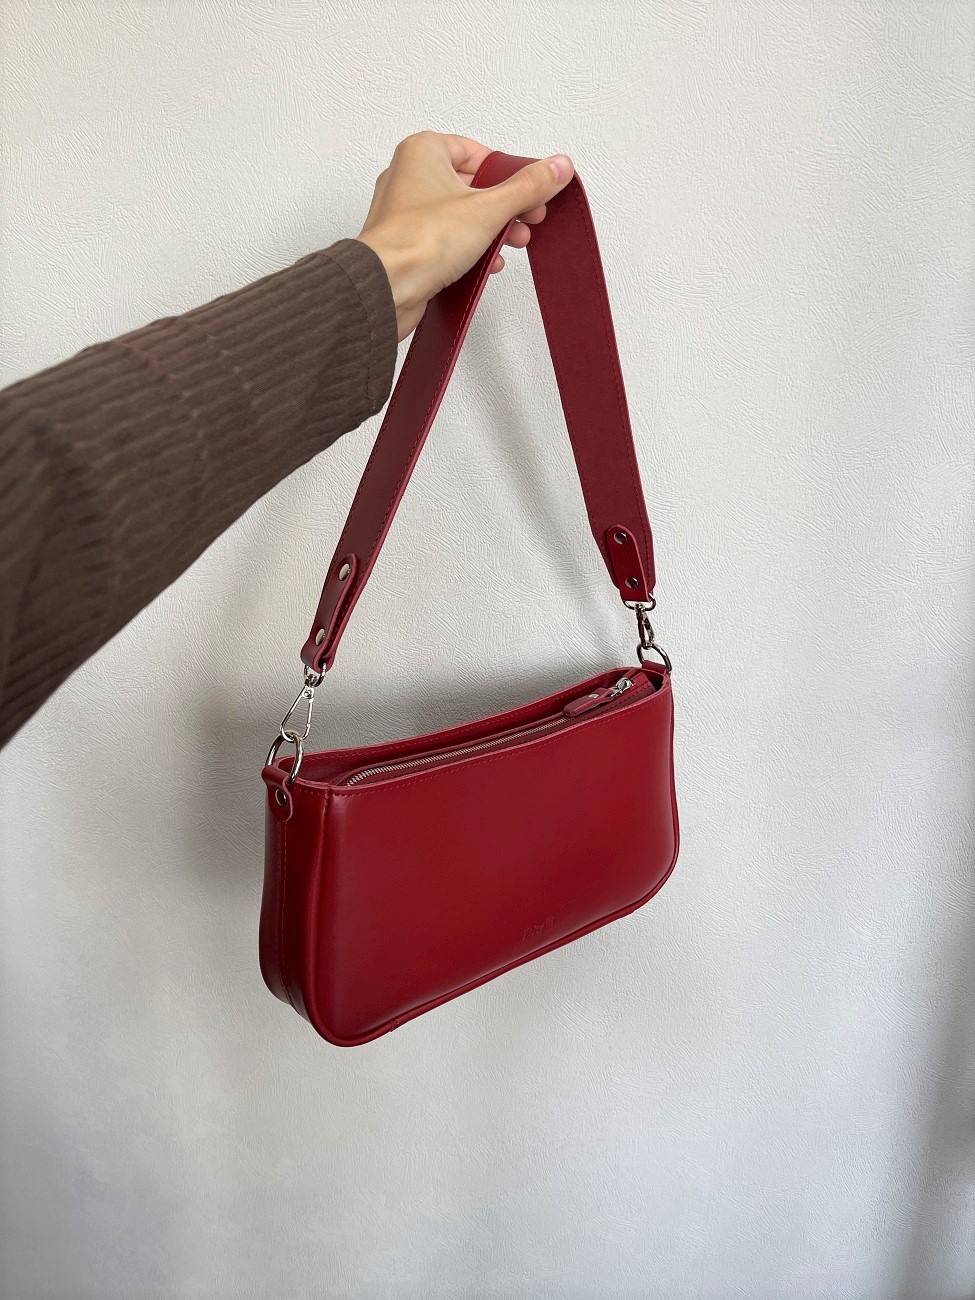 Женская кожаная сумка-багет красная A041 ruby